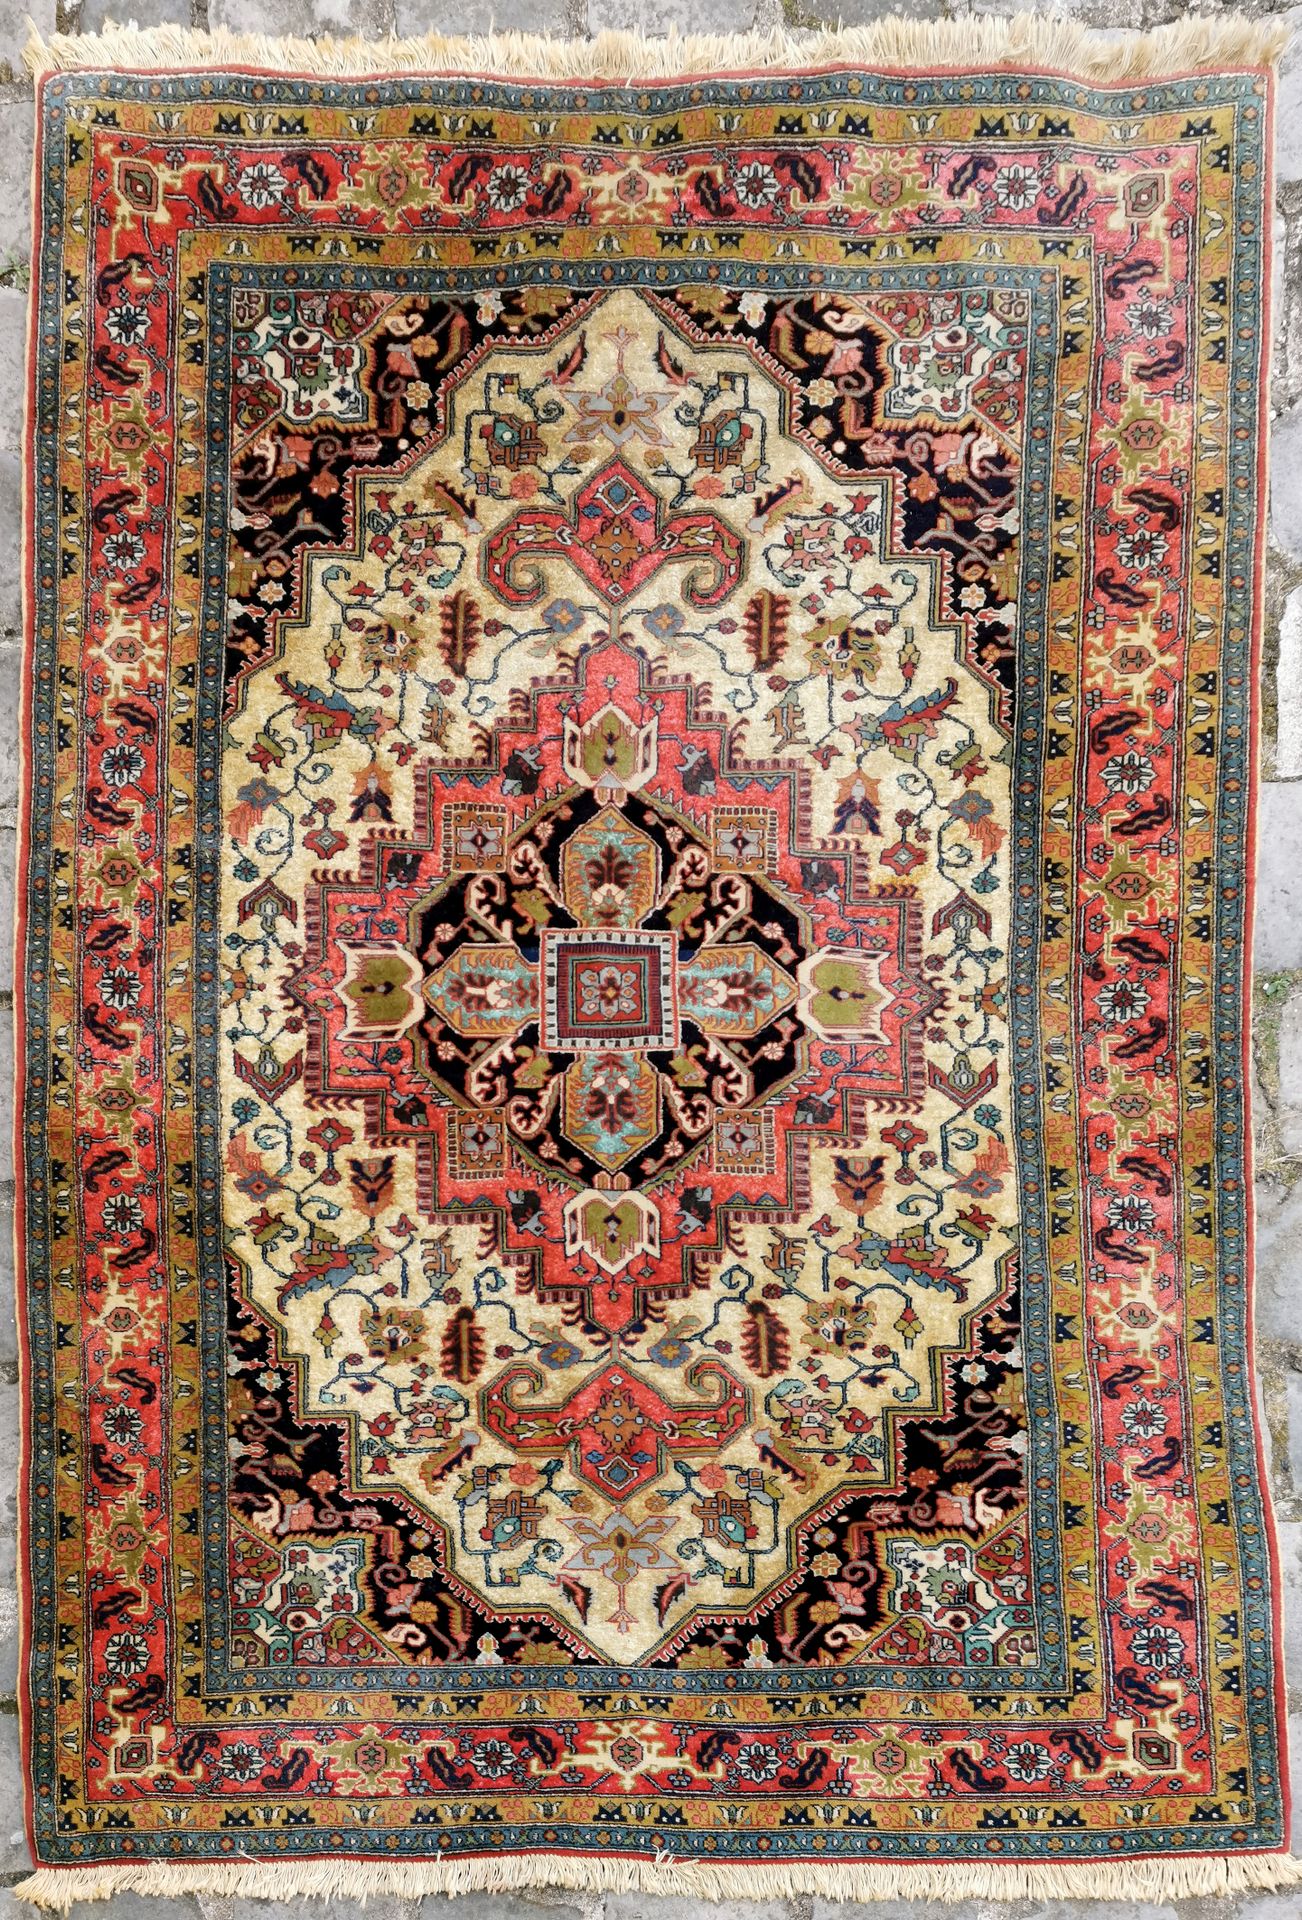 Null 阿德比勒（伊朗西北部）约1975/1980年。

技术特点：丝质羊毛绒，花朵由丝绸包围，以棉花为基础。

象牙色的场地上有几何风格的卷轴和花环，框住了&hellip;